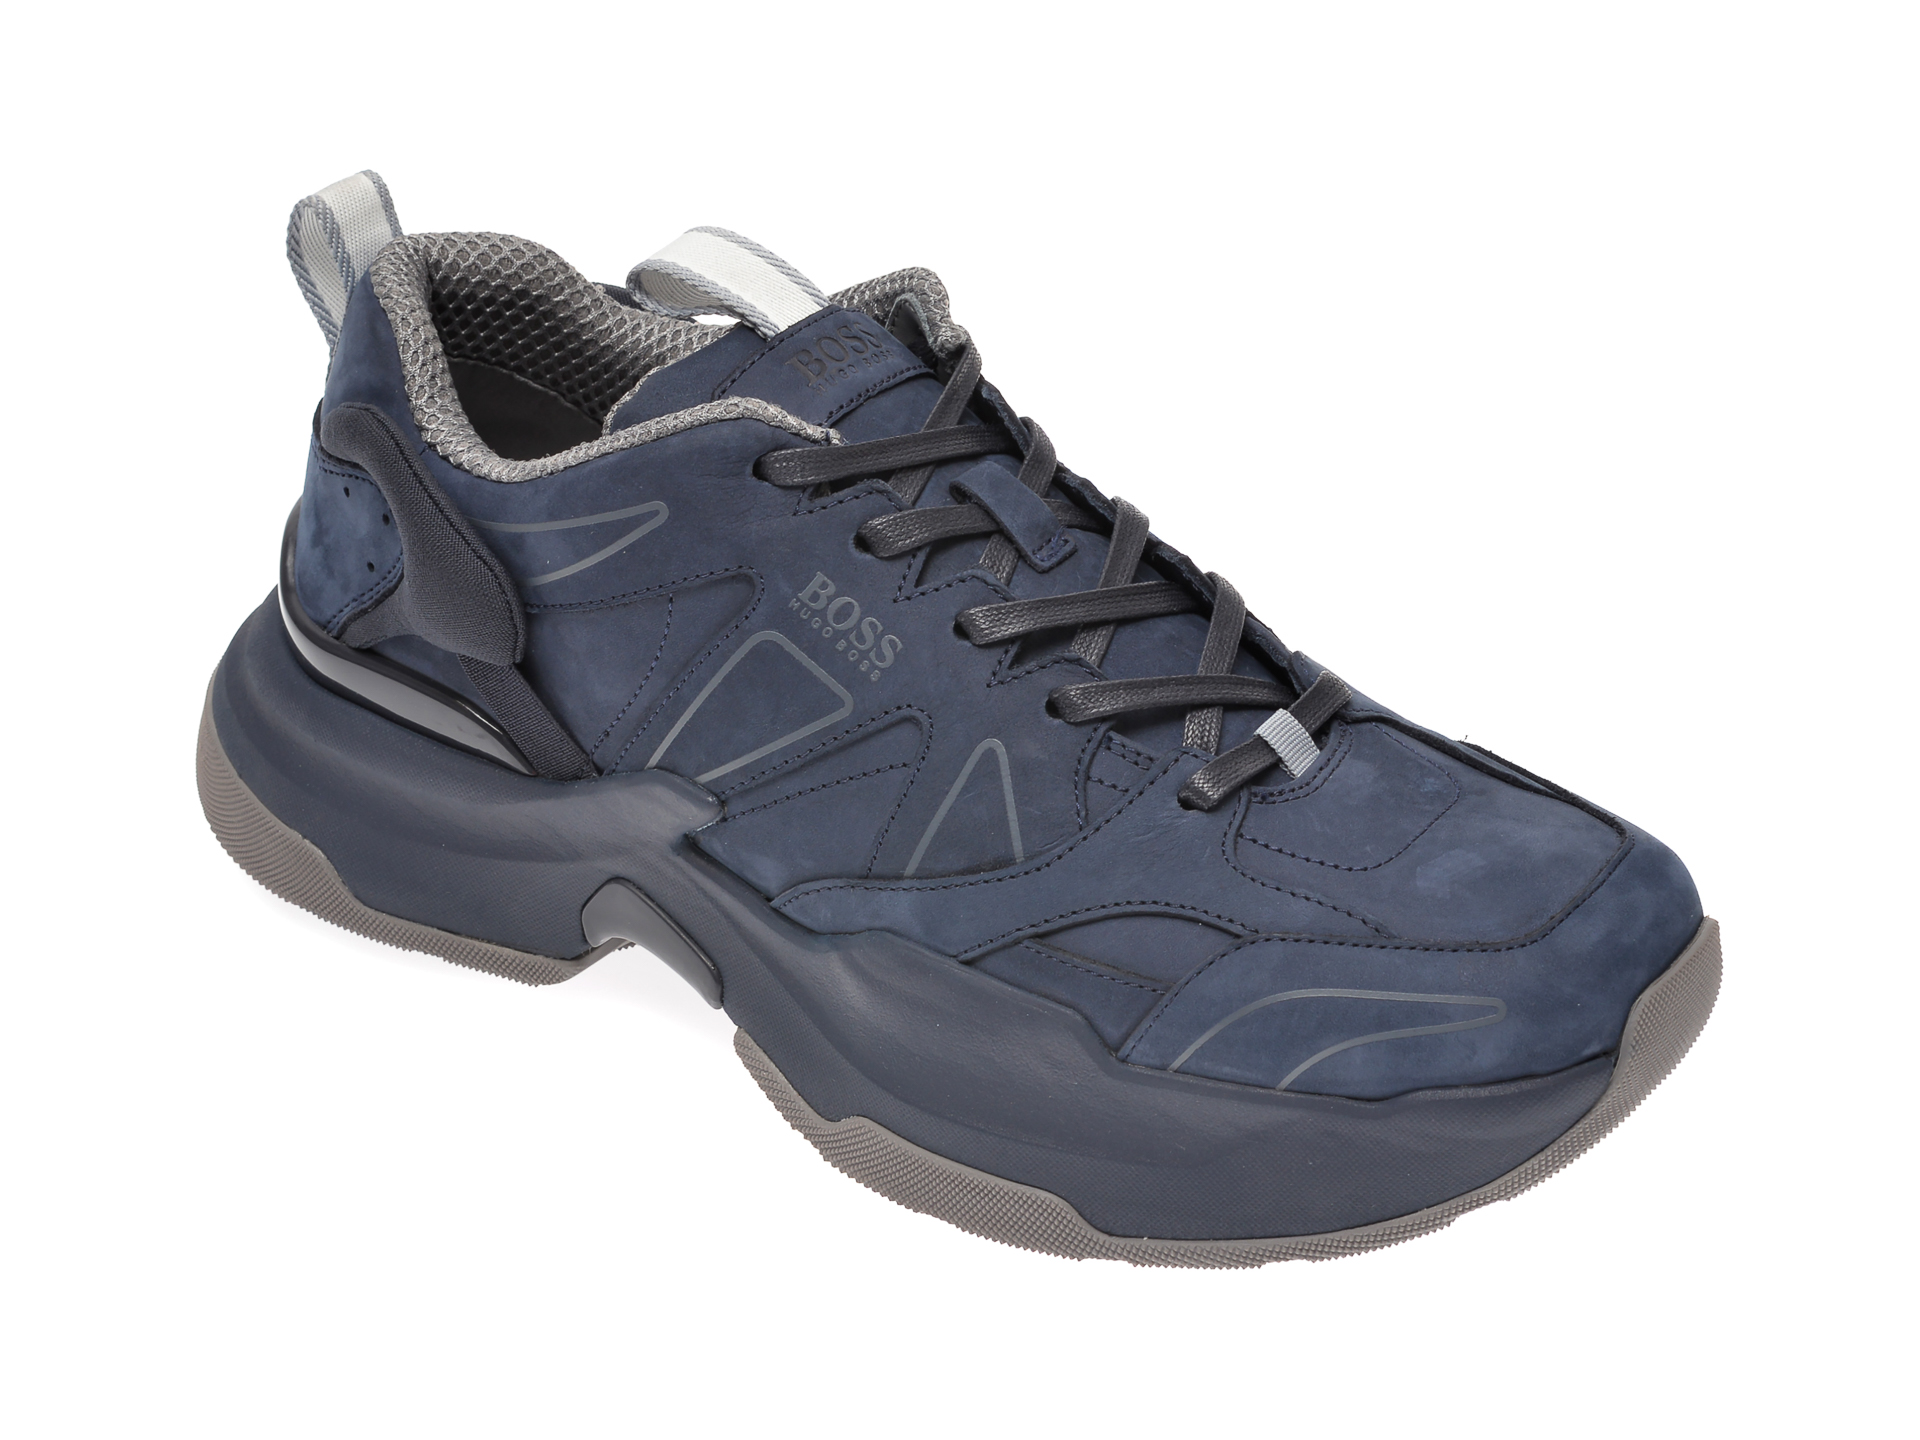 Pantofi sport HUGO BOSS bleumarin, 8593, din piele naturala